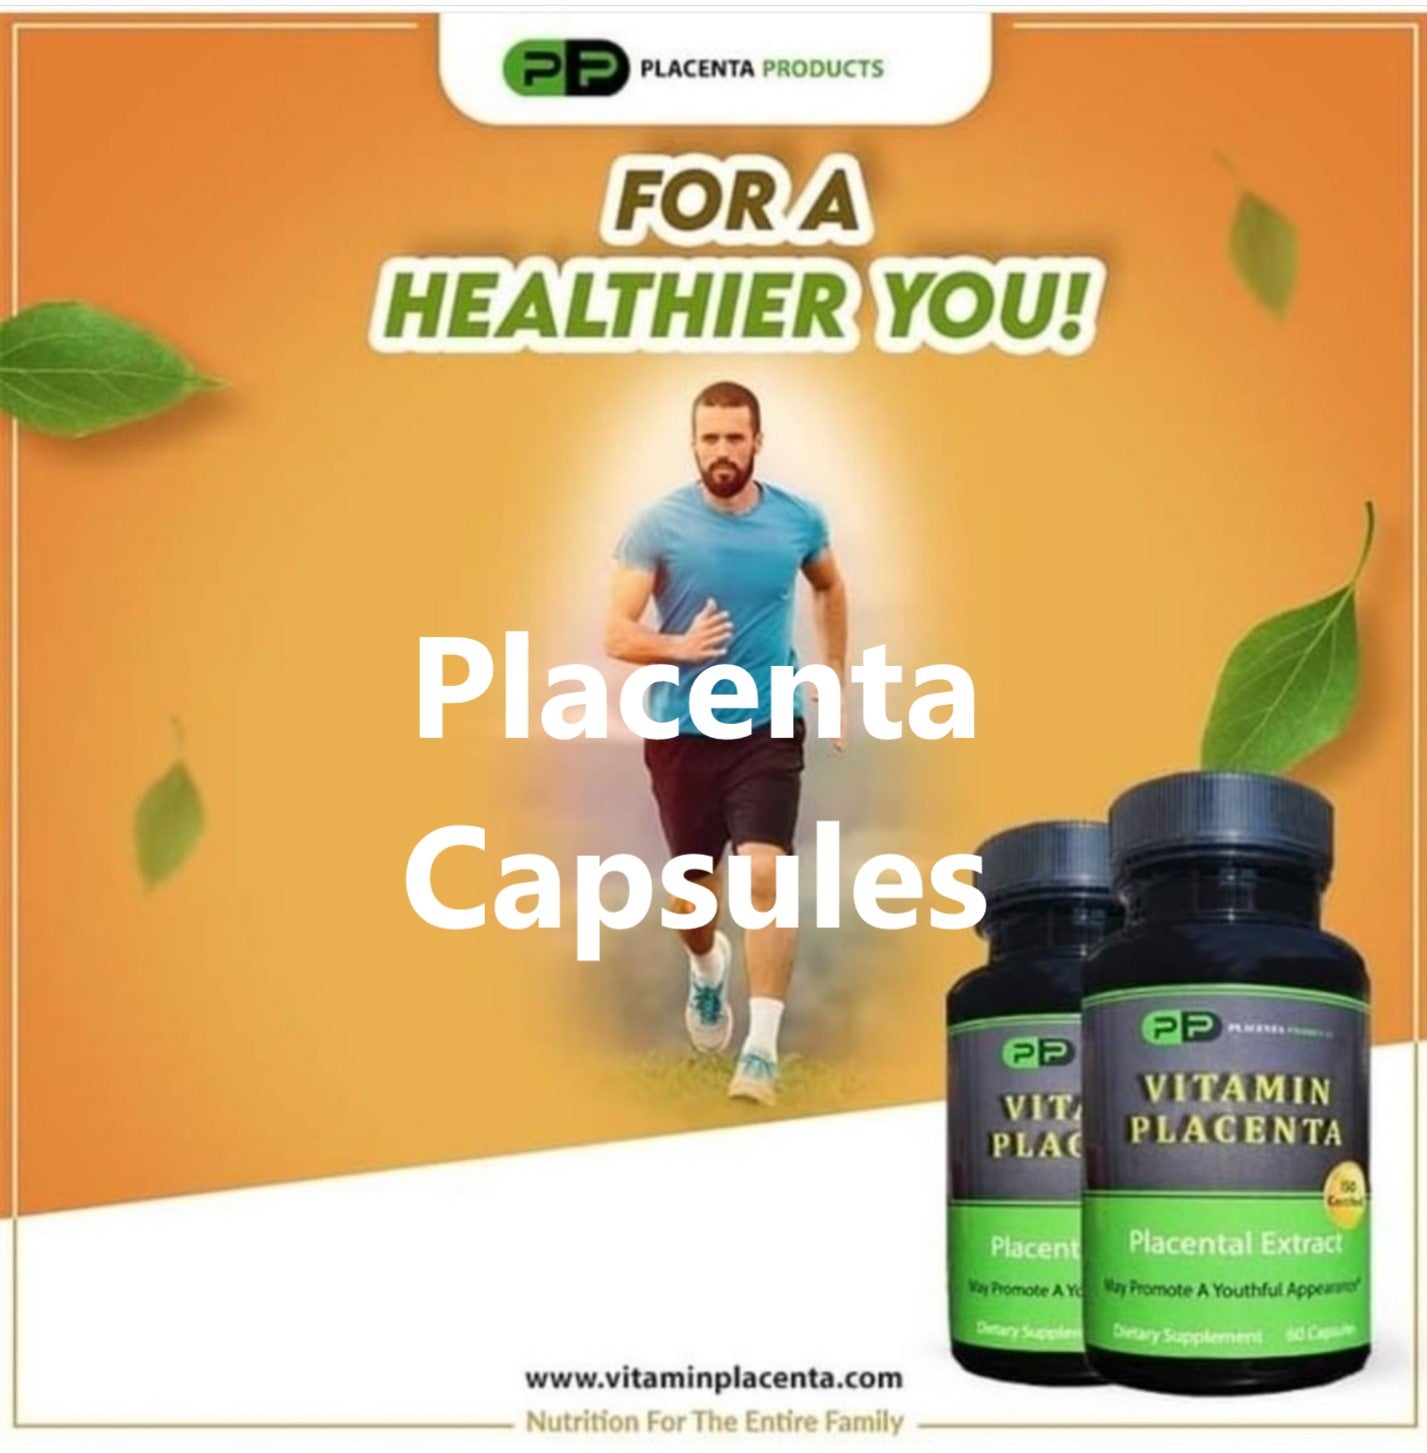 Benefits of Placenta Capsules